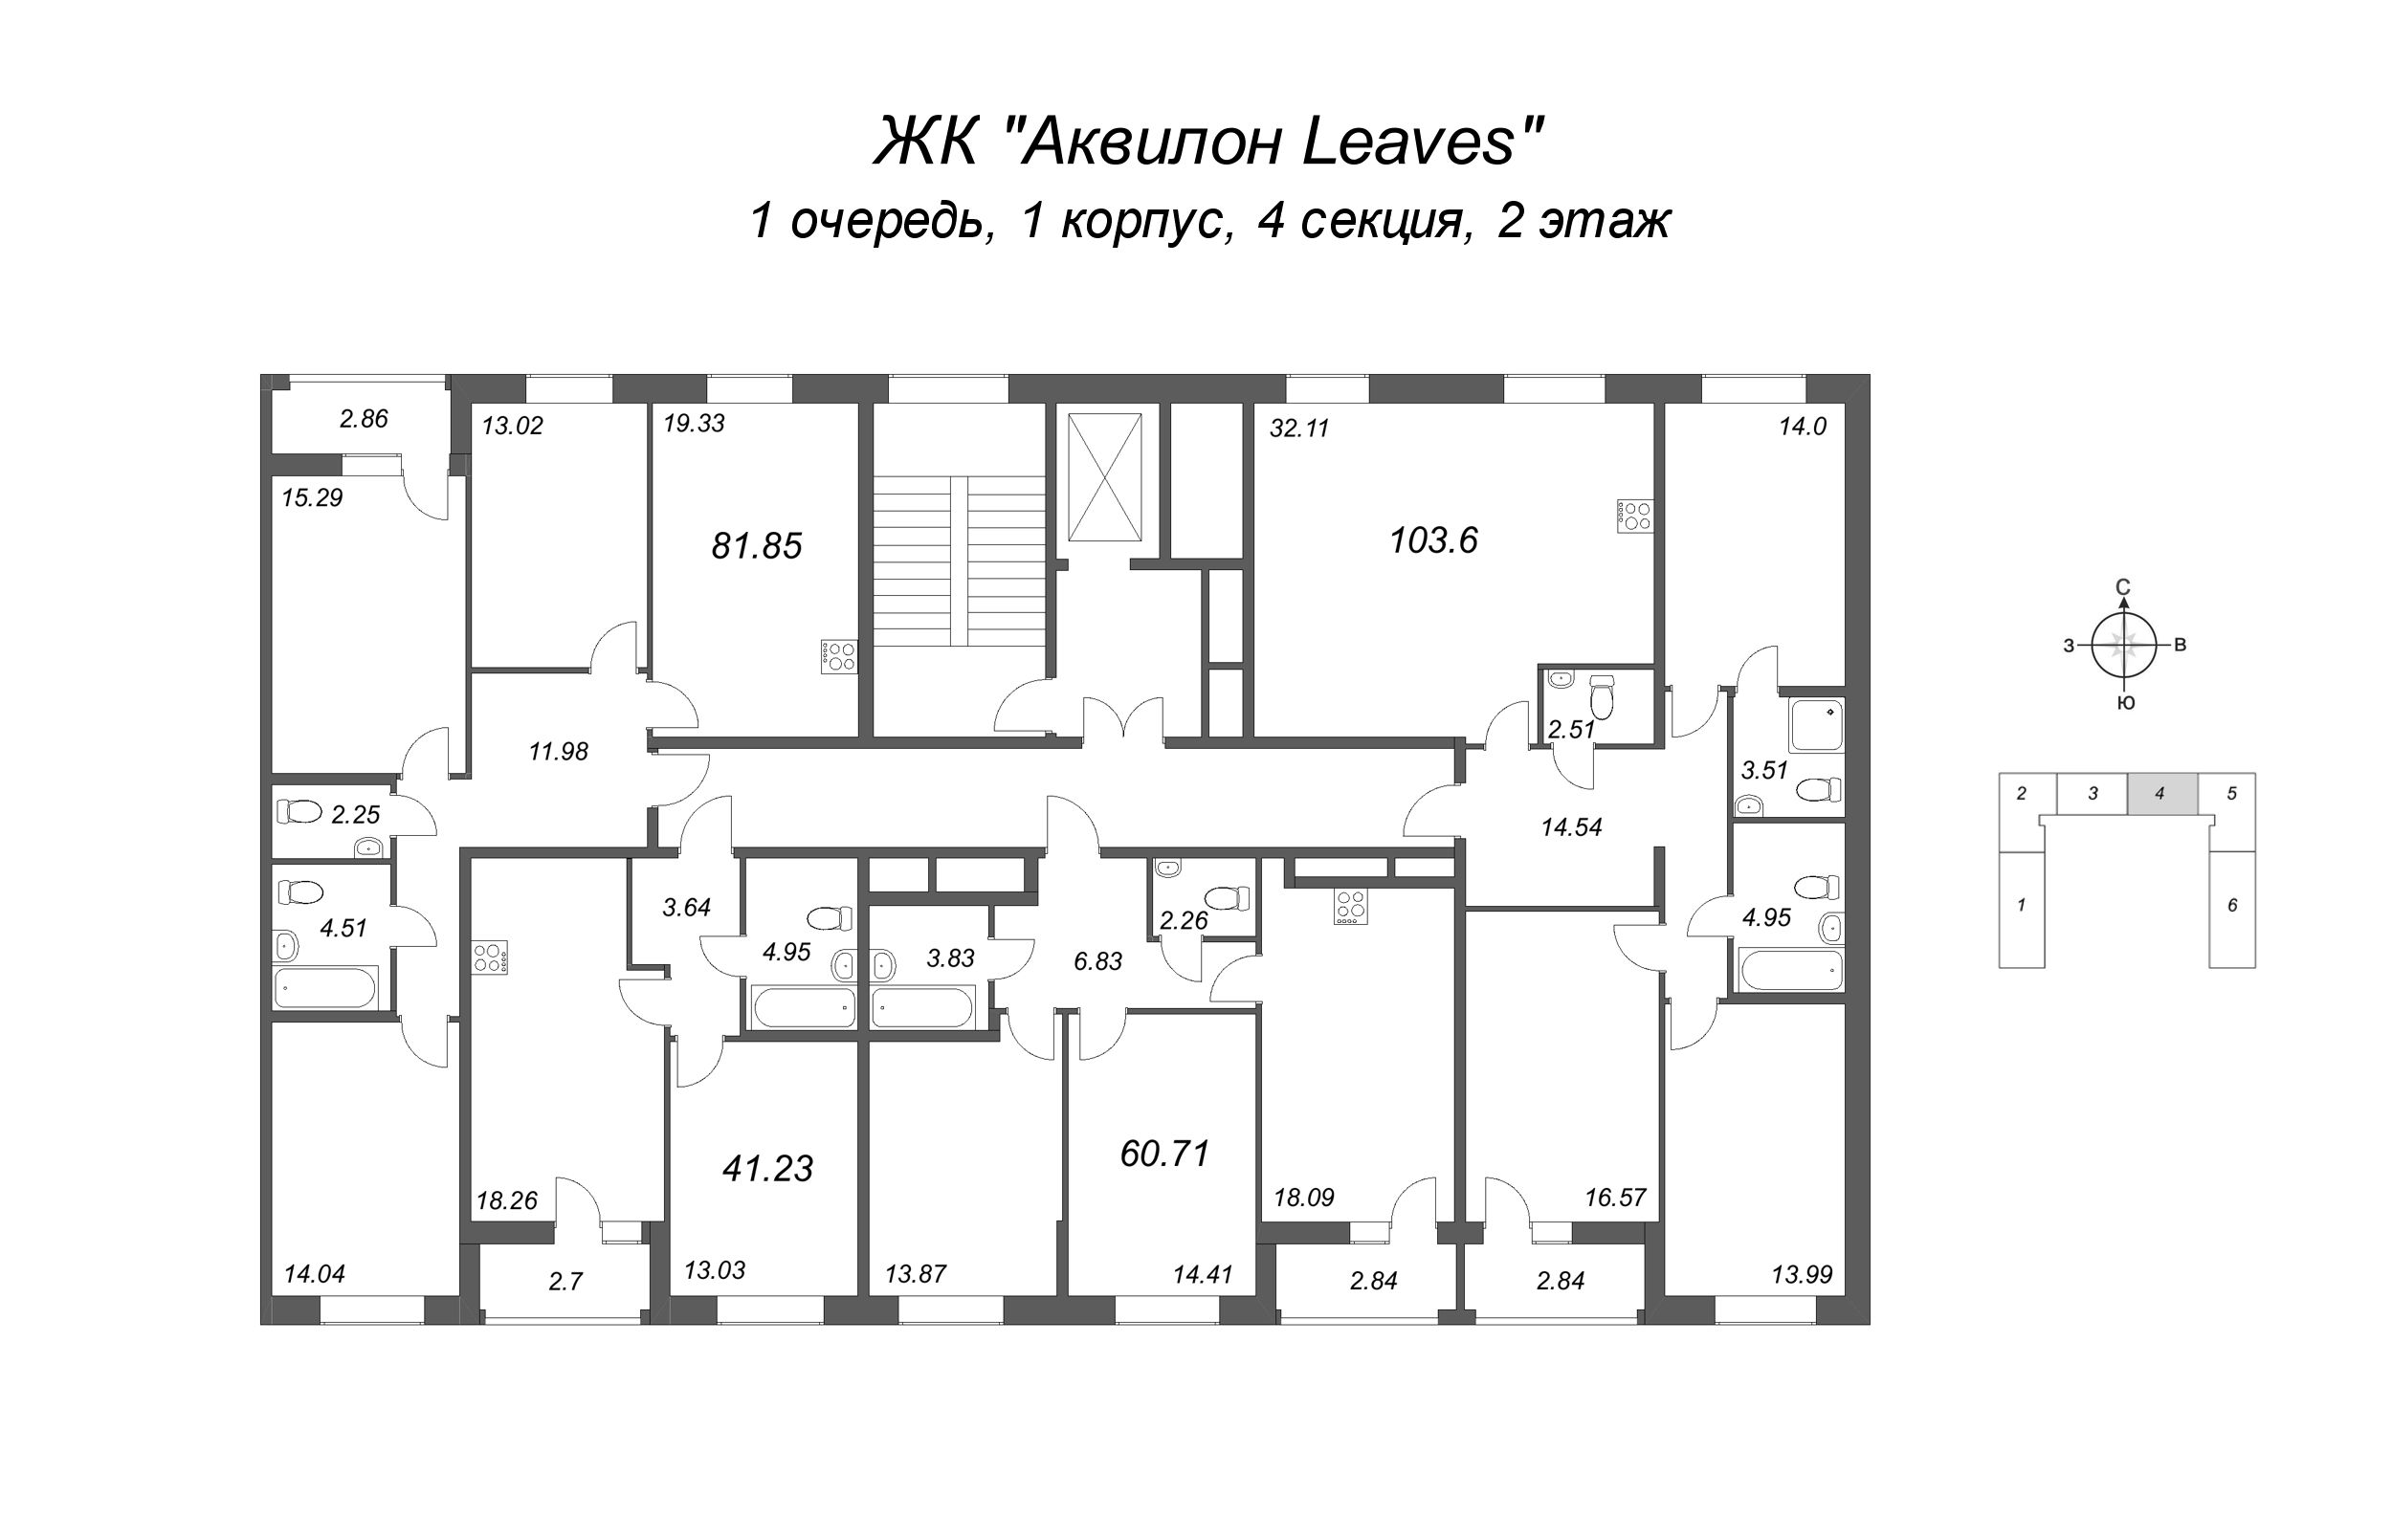 2-комнатная (Евро) квартира, 41.23 м² в ЖК "Аквилон Leaves" - планировка этажа